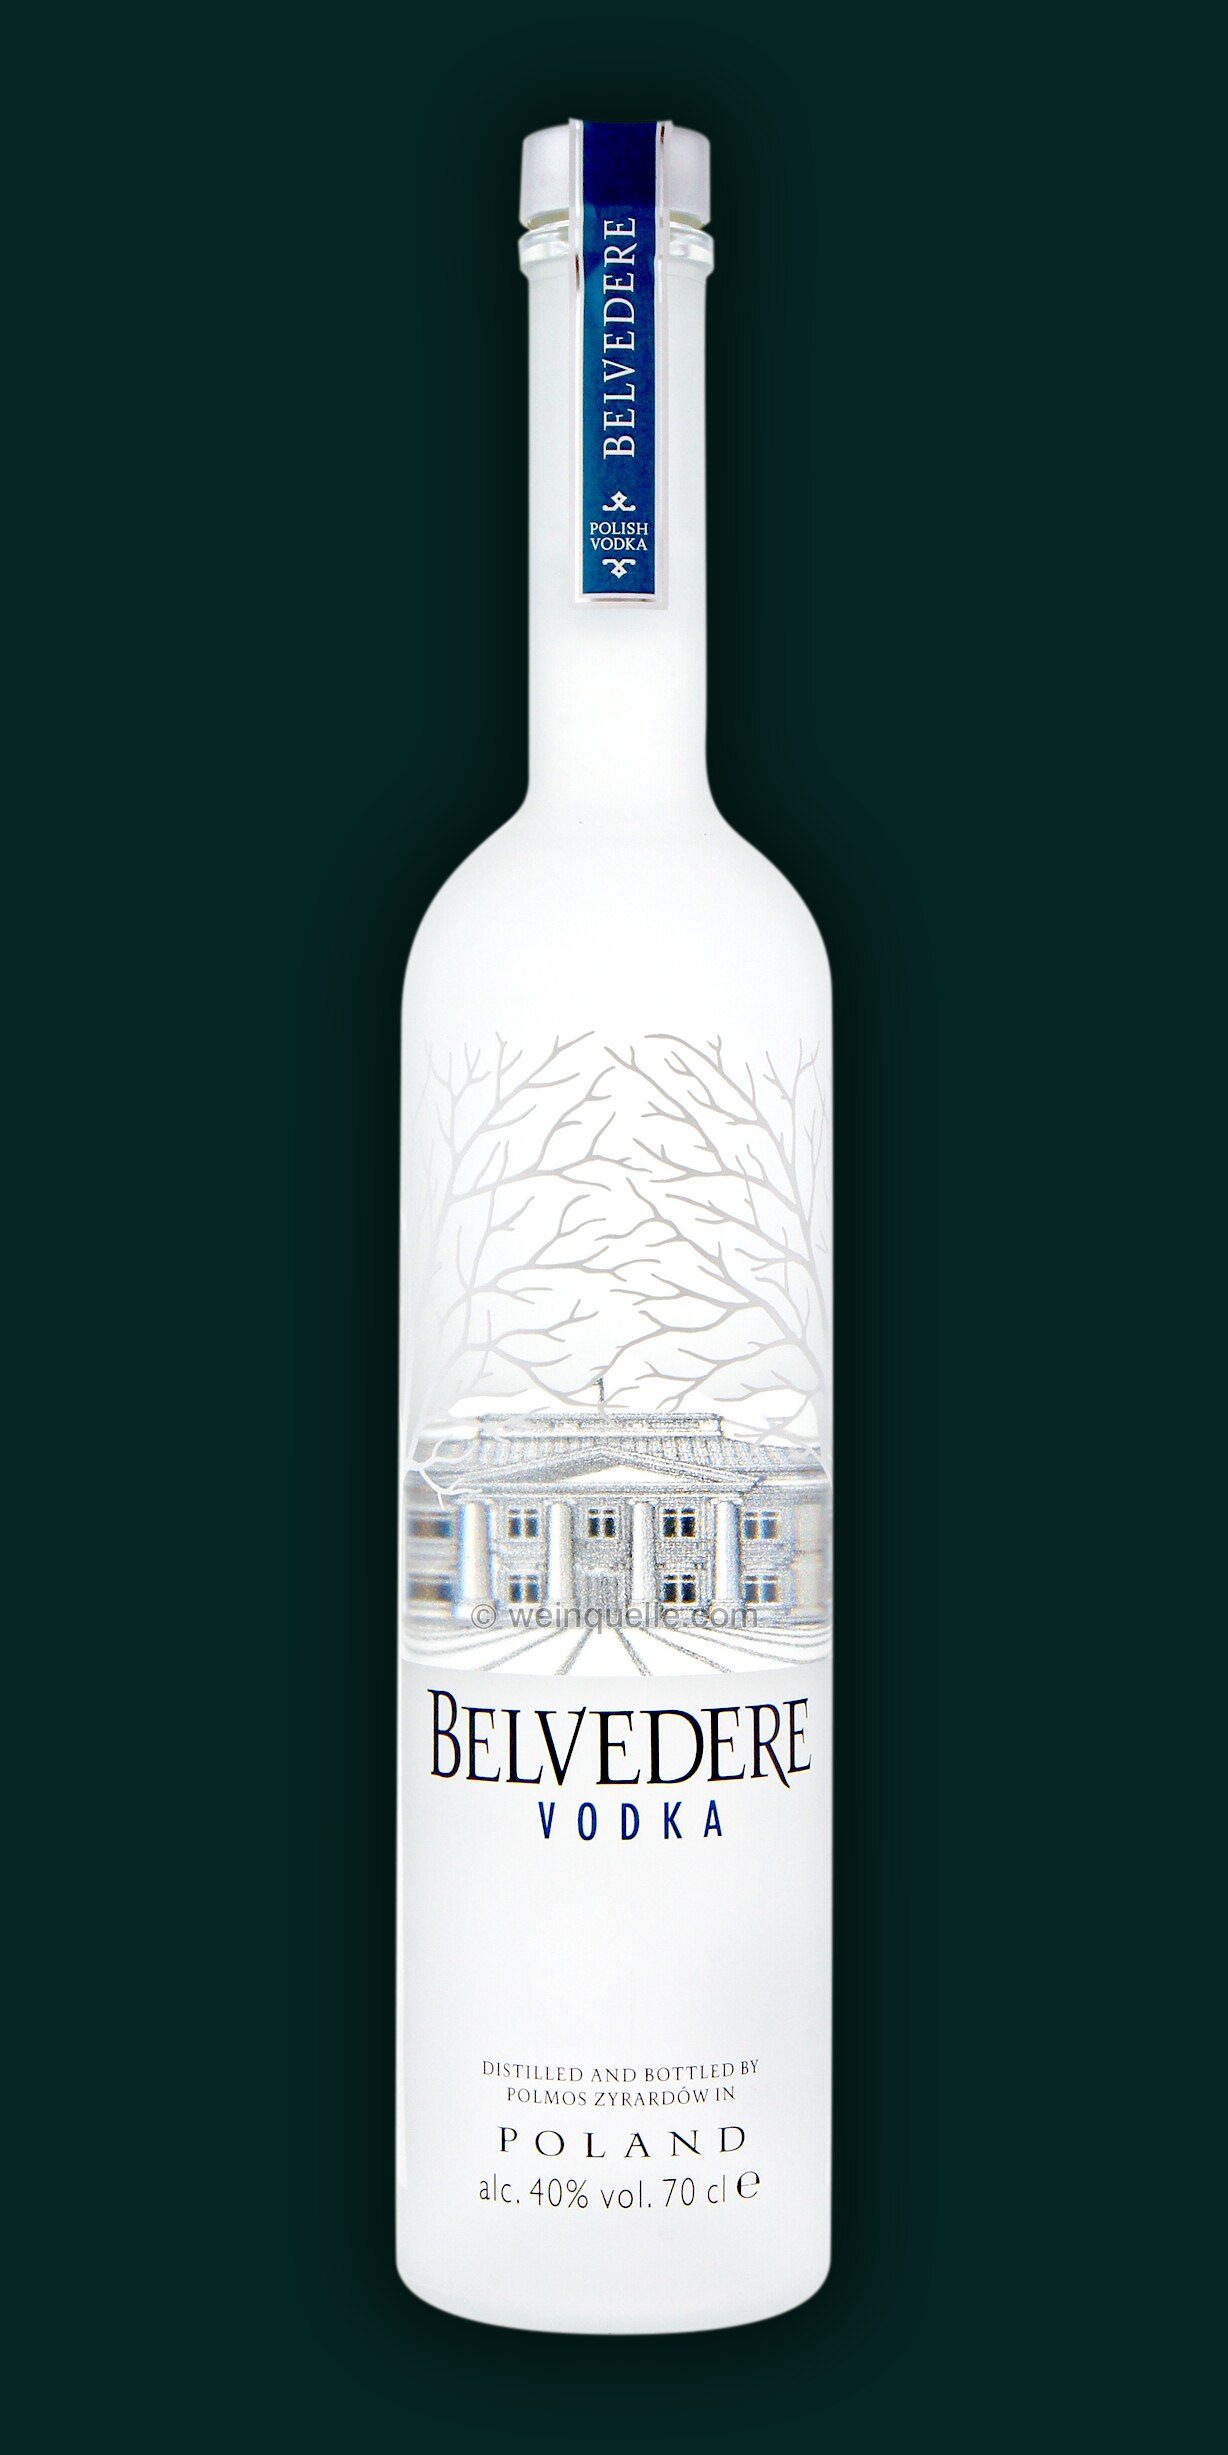 Belvedere Vodka 0,7 Liter